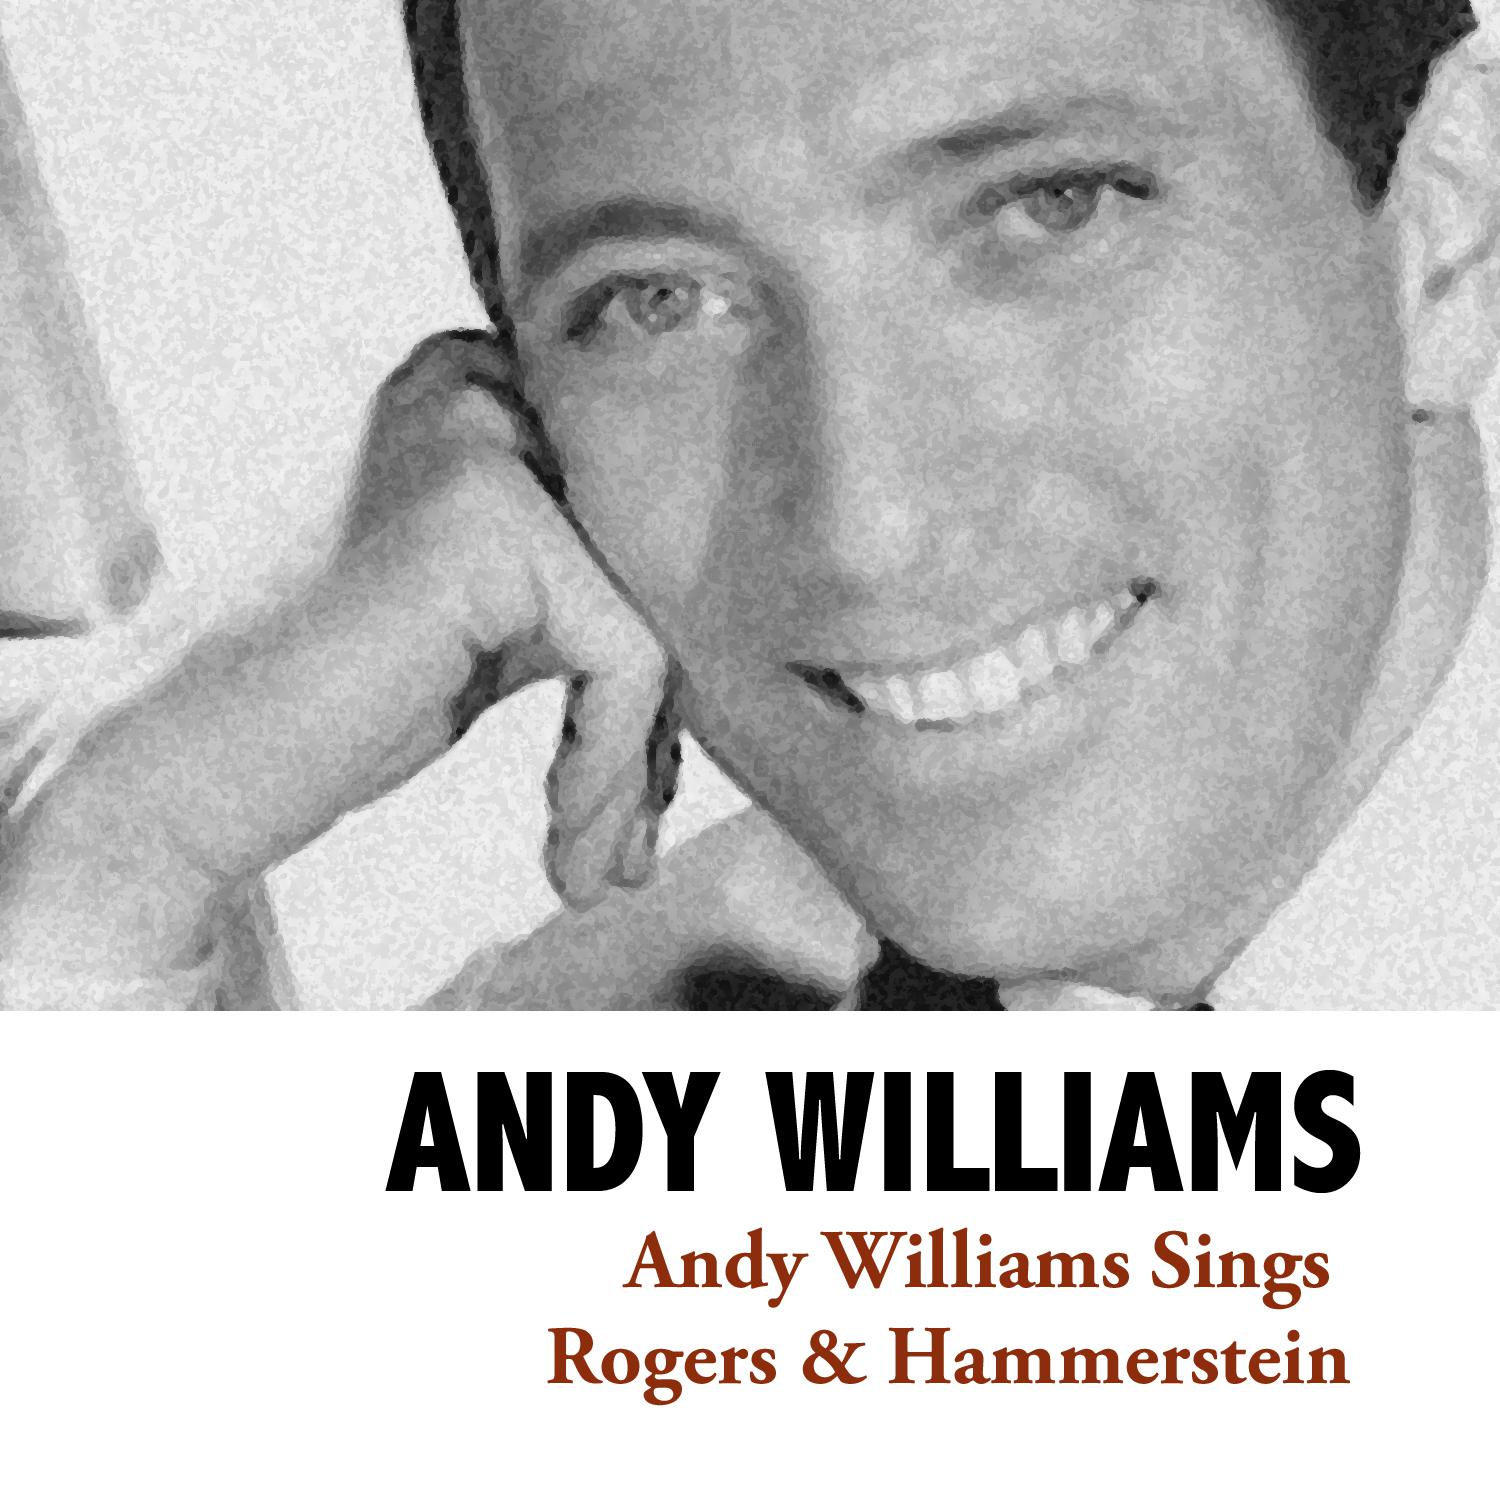 Andy Williams Sings Rogers & Hammerstein